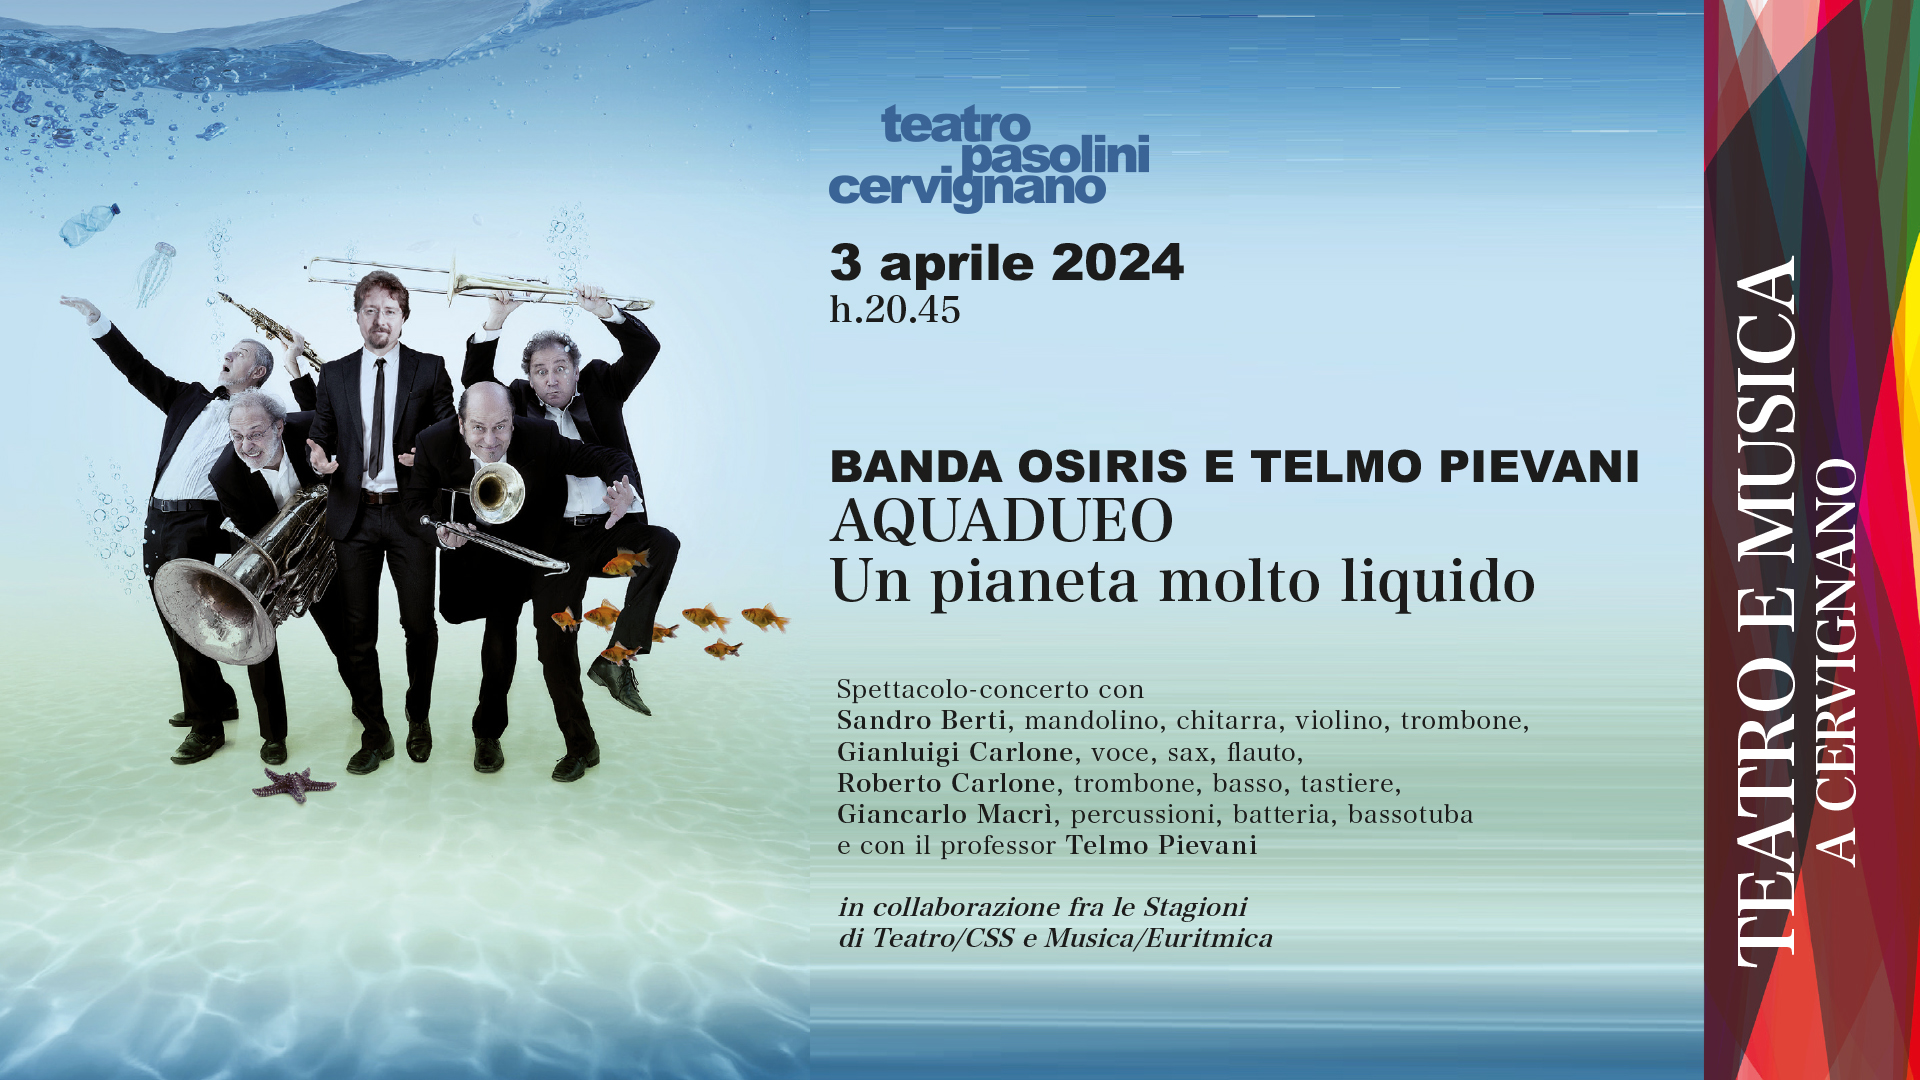 Aquadueo BANDA OSIRIS E TELMO PLEVANI, Teatro Pasolini, Cervignano